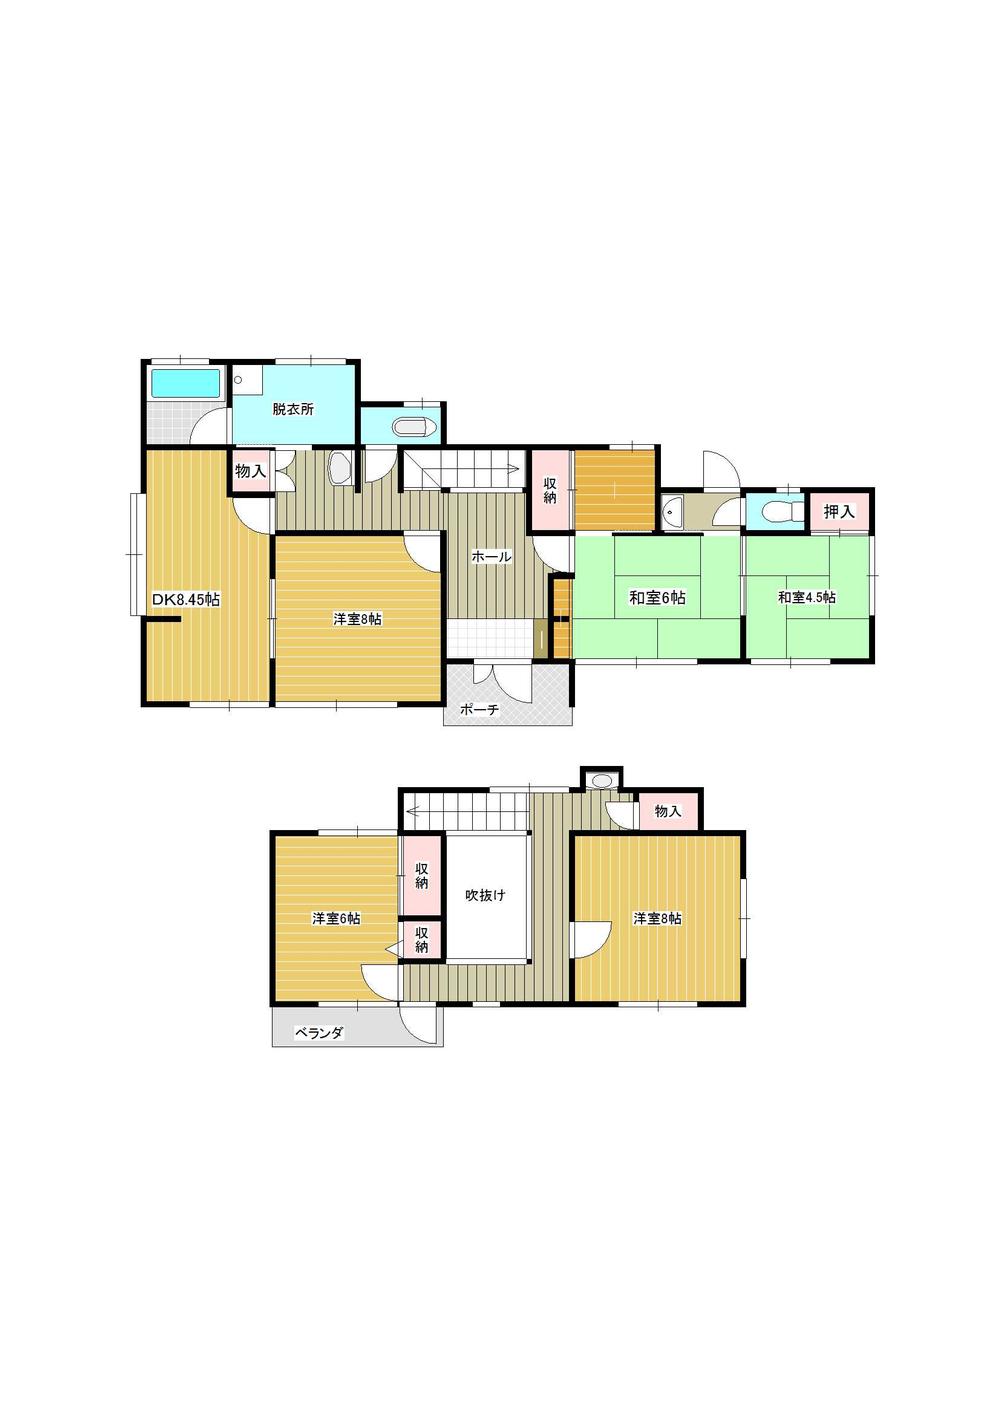 Floor plan. 17.5 million yen, 5DK, Land area 244.09 sq m , Building area 117.99 sq m